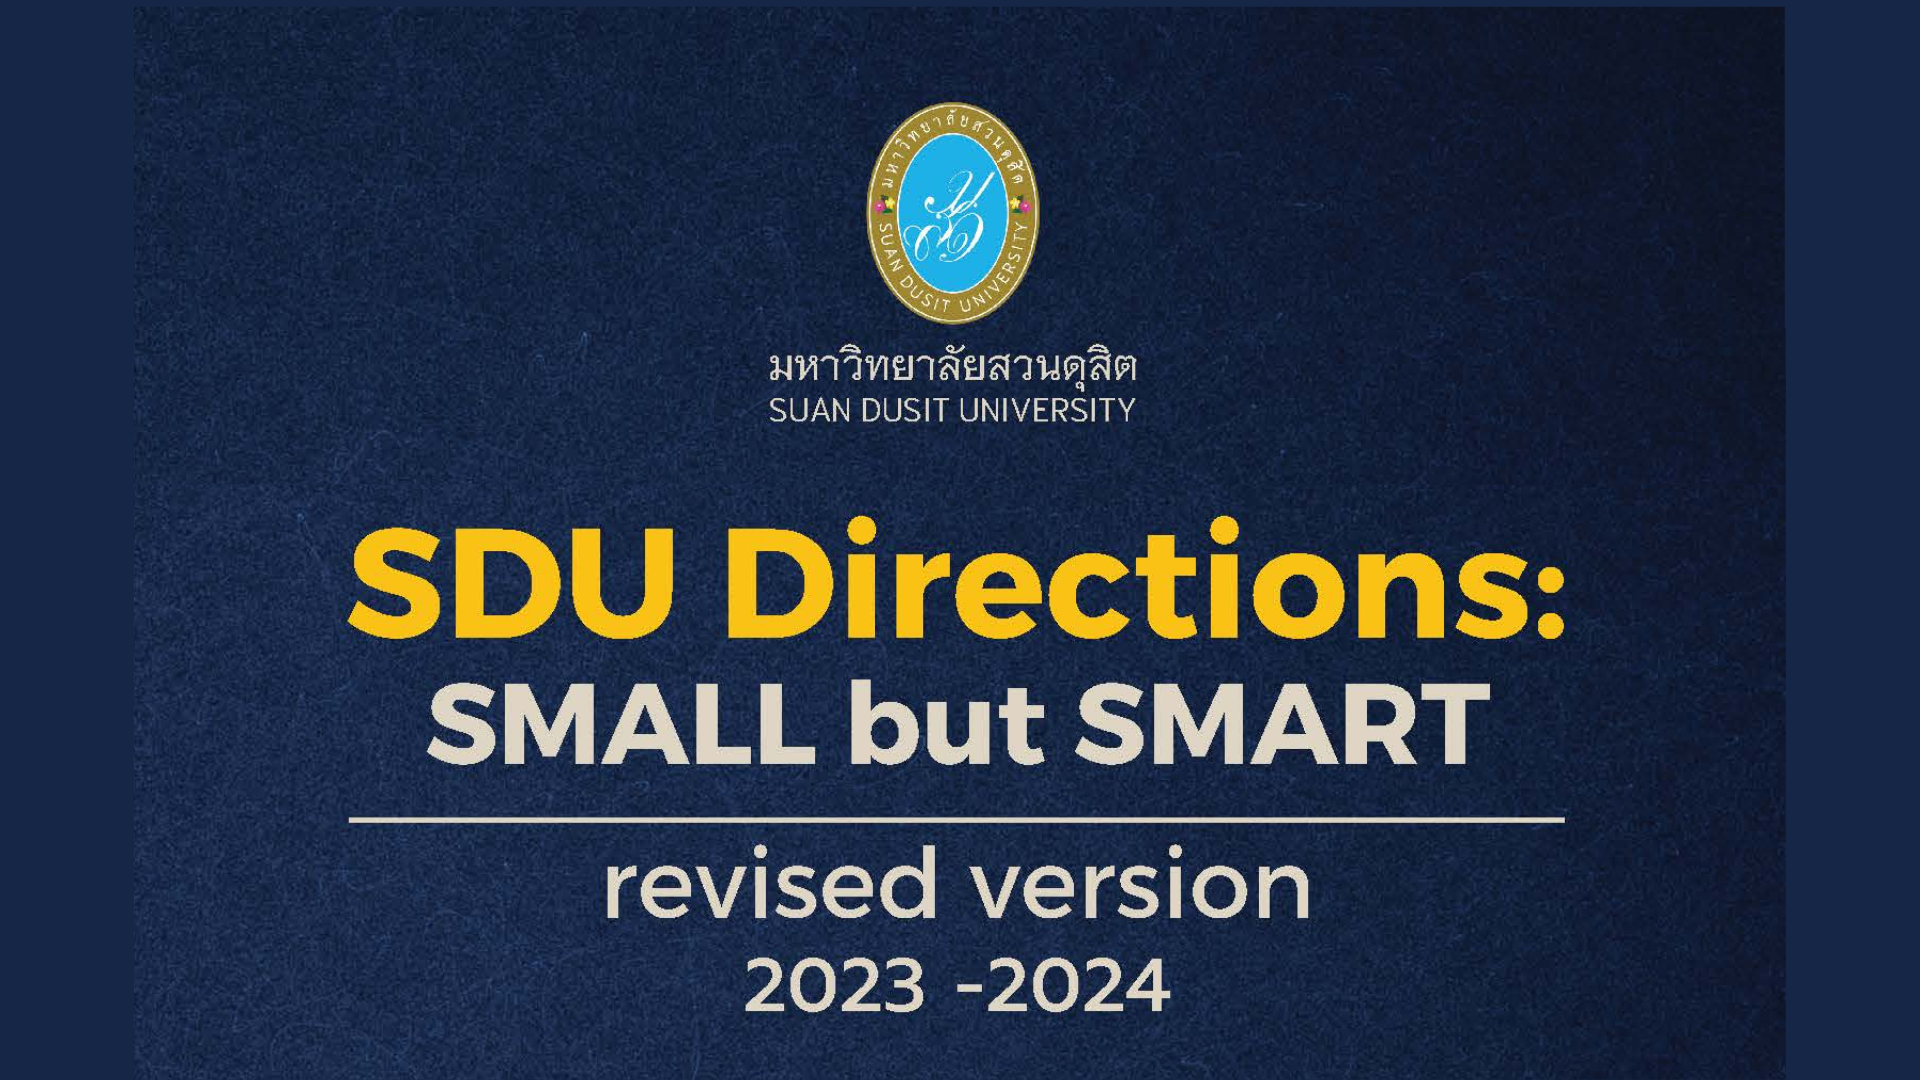 ทิศทางของมหาวิทยาลัยสวนดุสิต: จิ๋ว แต่ แจ๋ว (ฉบับทบทวน) พ.ศ. ๒๕๖๖-๒๕๖๗ (SDU Directions: SMALL but SMART (Revised version) 2023-2024)